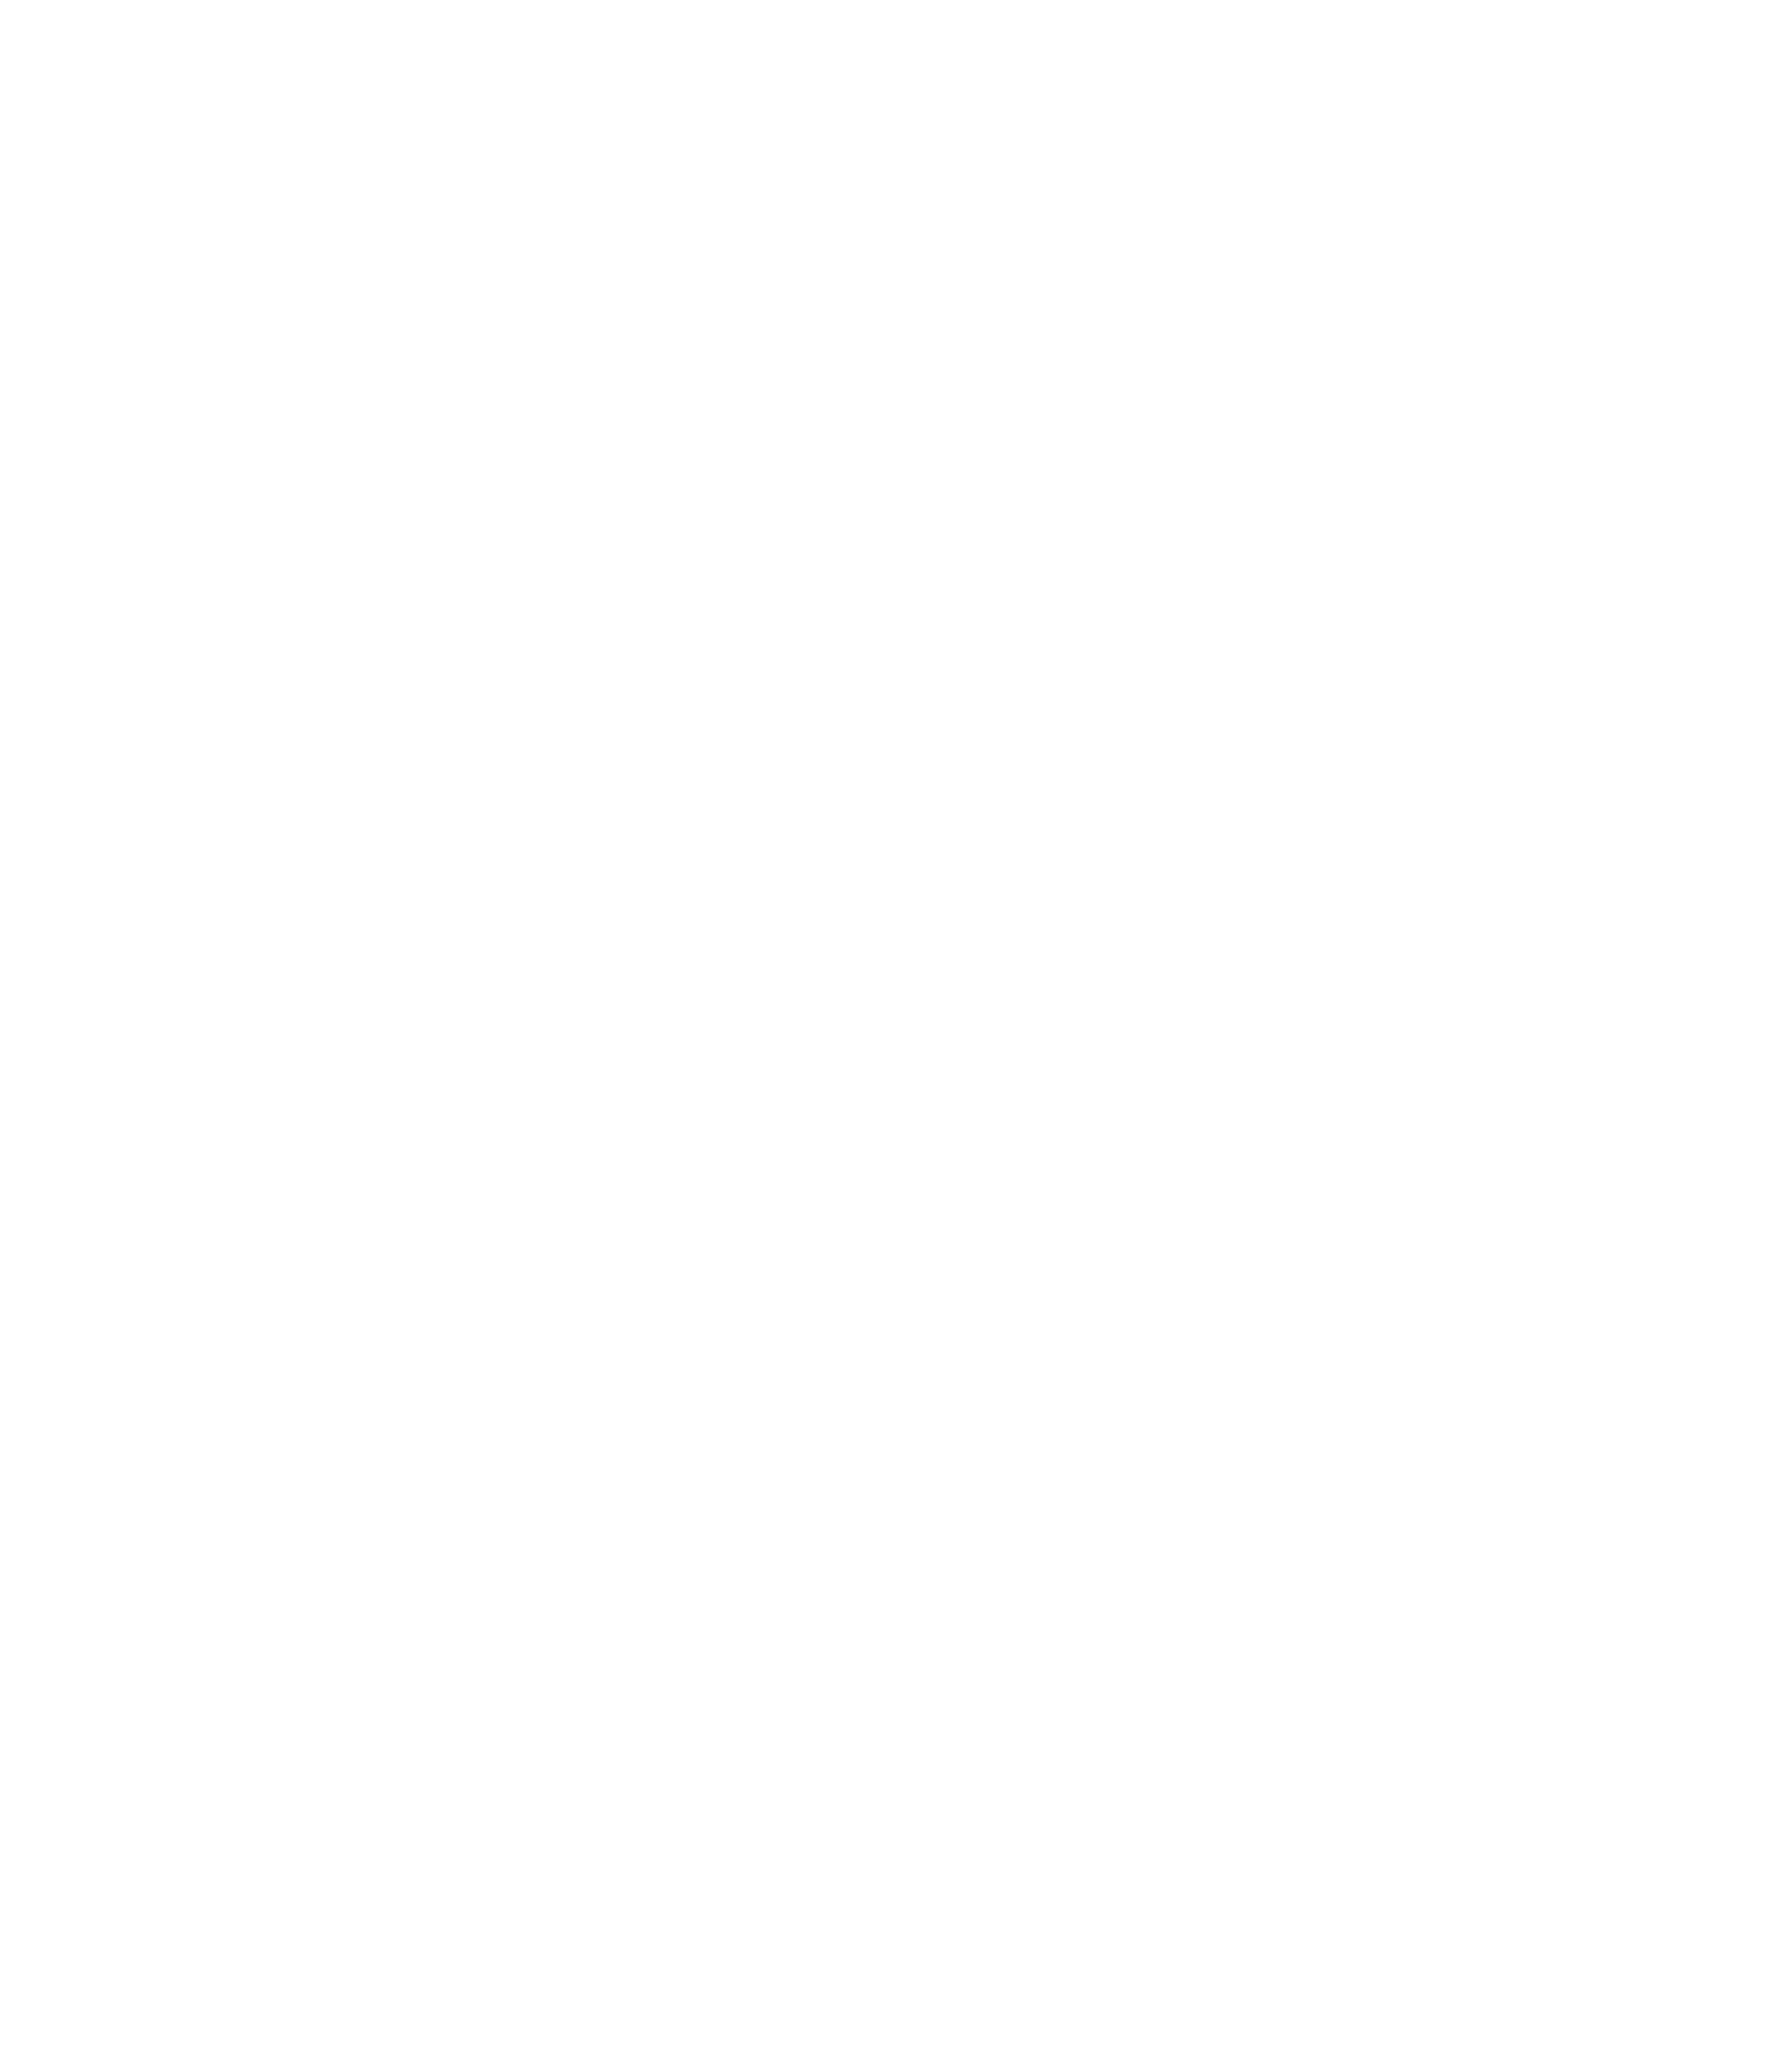 M&R